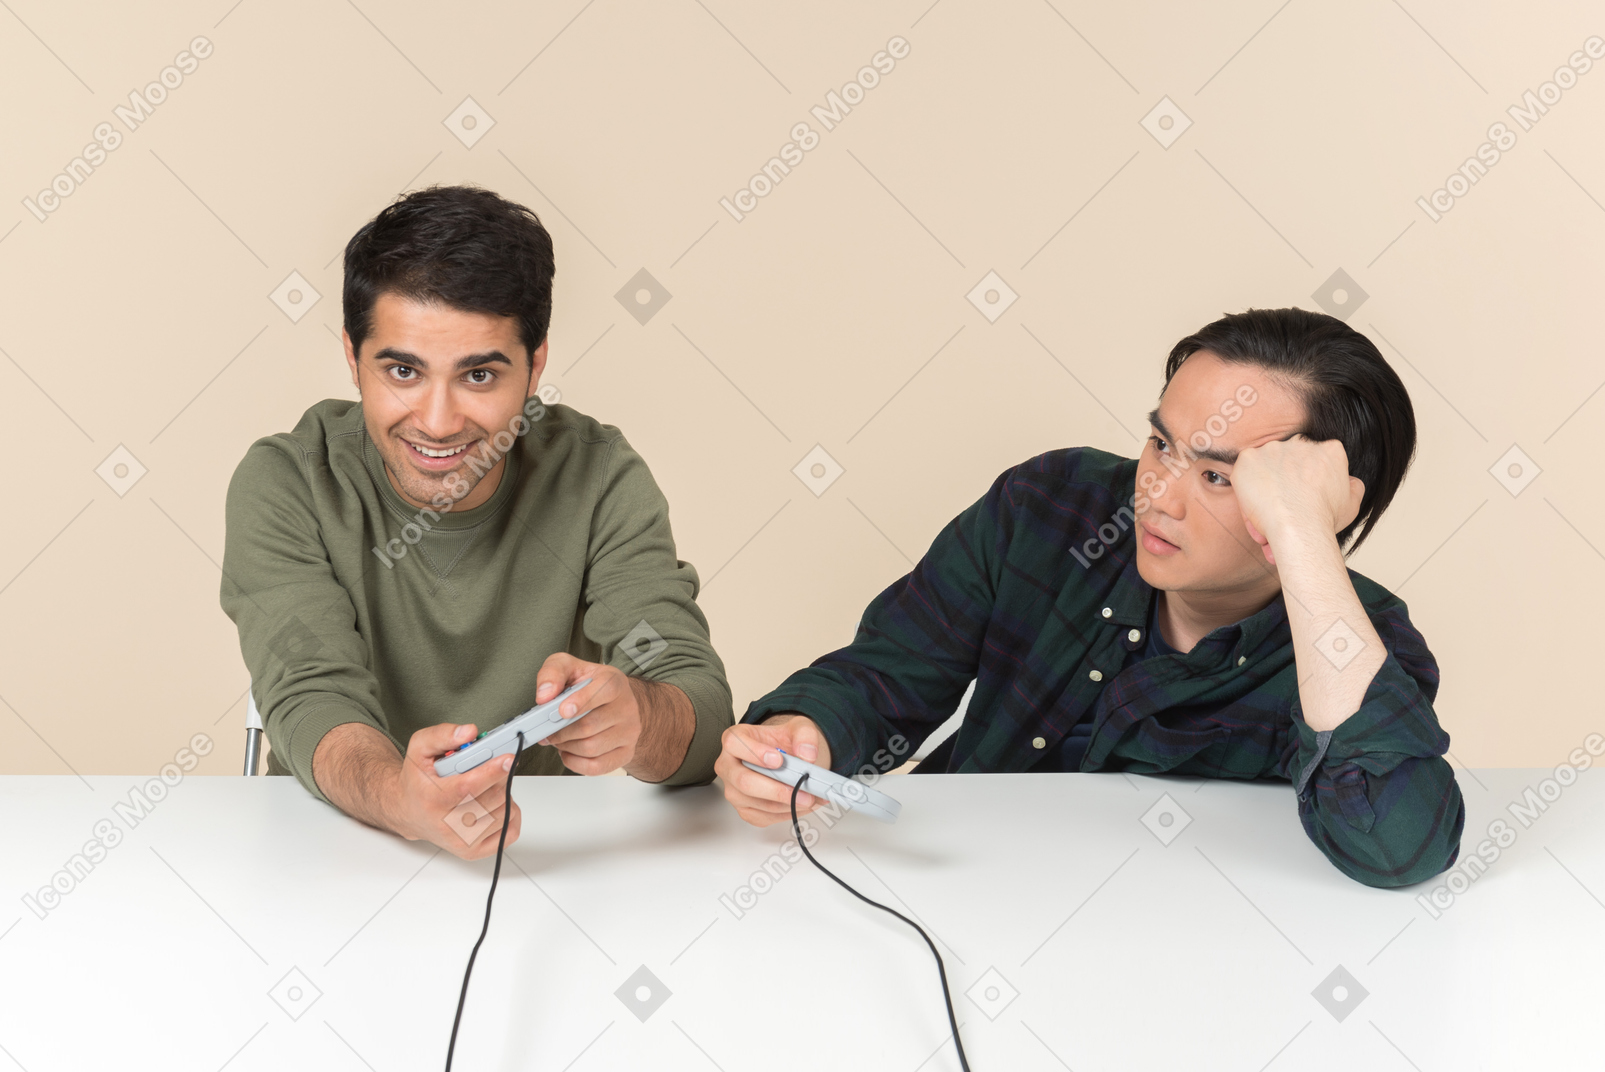 Amici interrazziali che giocano a videogiochi e uno di loro sembra infastidito